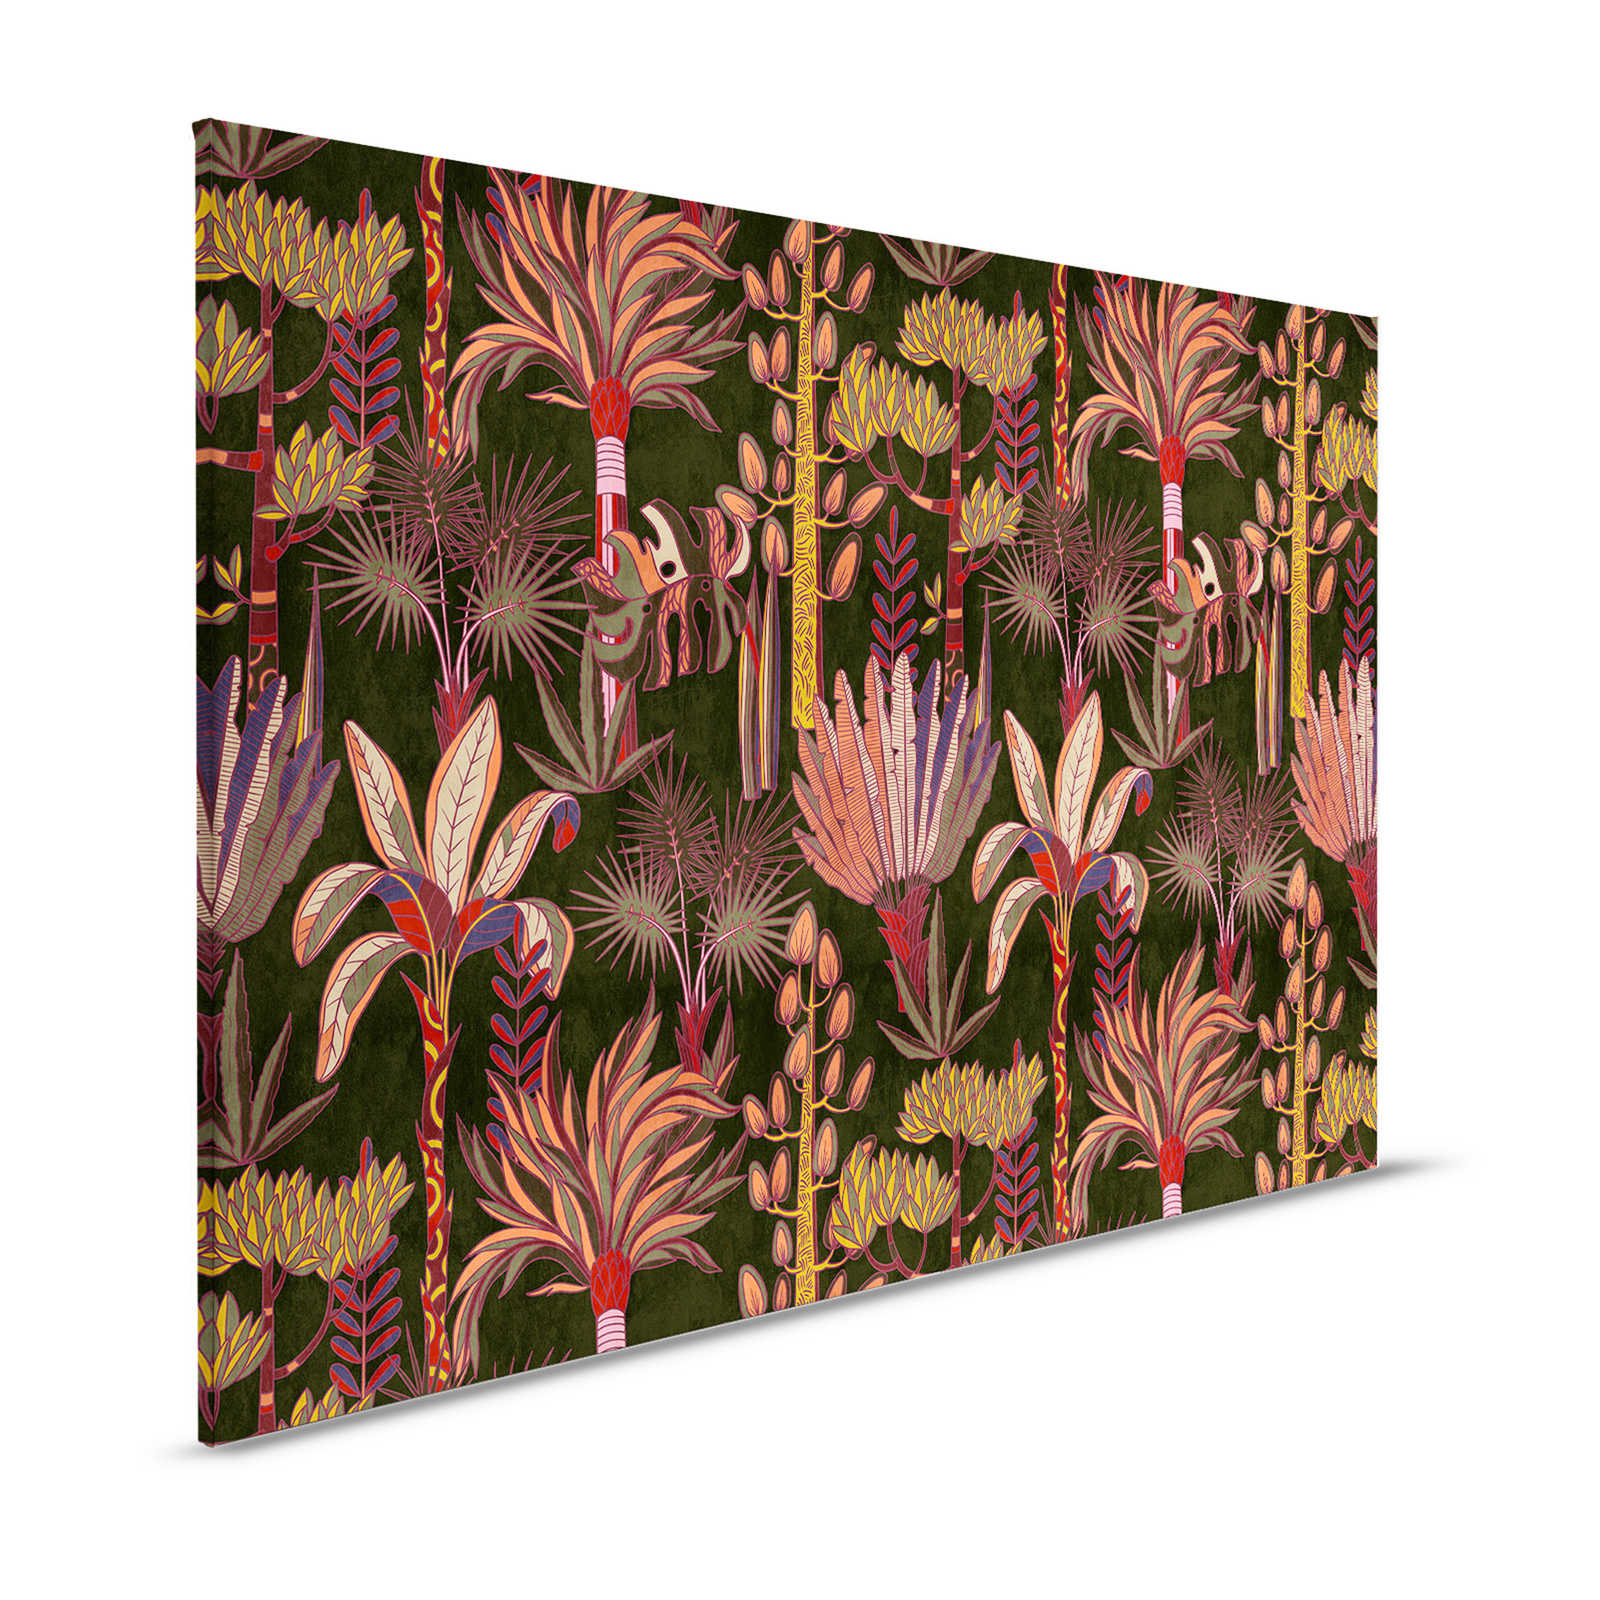 Lagos 1 - Palmbomen canvas schilderij kleurrijke grafische stijl in textiel look - 1,20 m x 0,80 m
